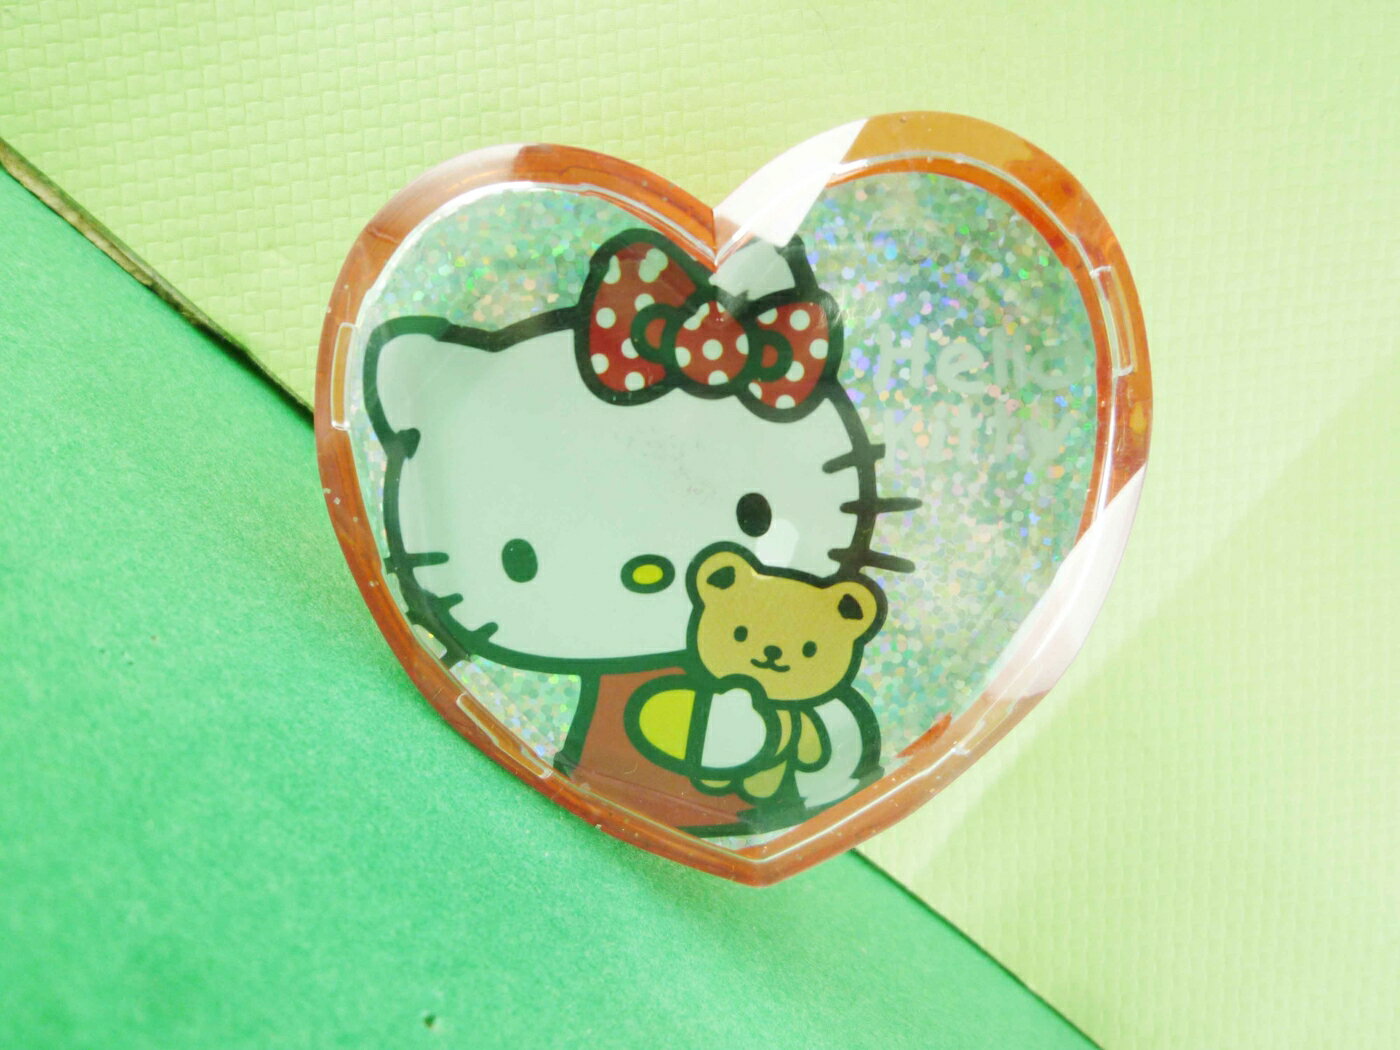 【震撼精品百貨】Hello Kitty 凱蒂貓 膠台-心型紅色 震撼日式精品百貨